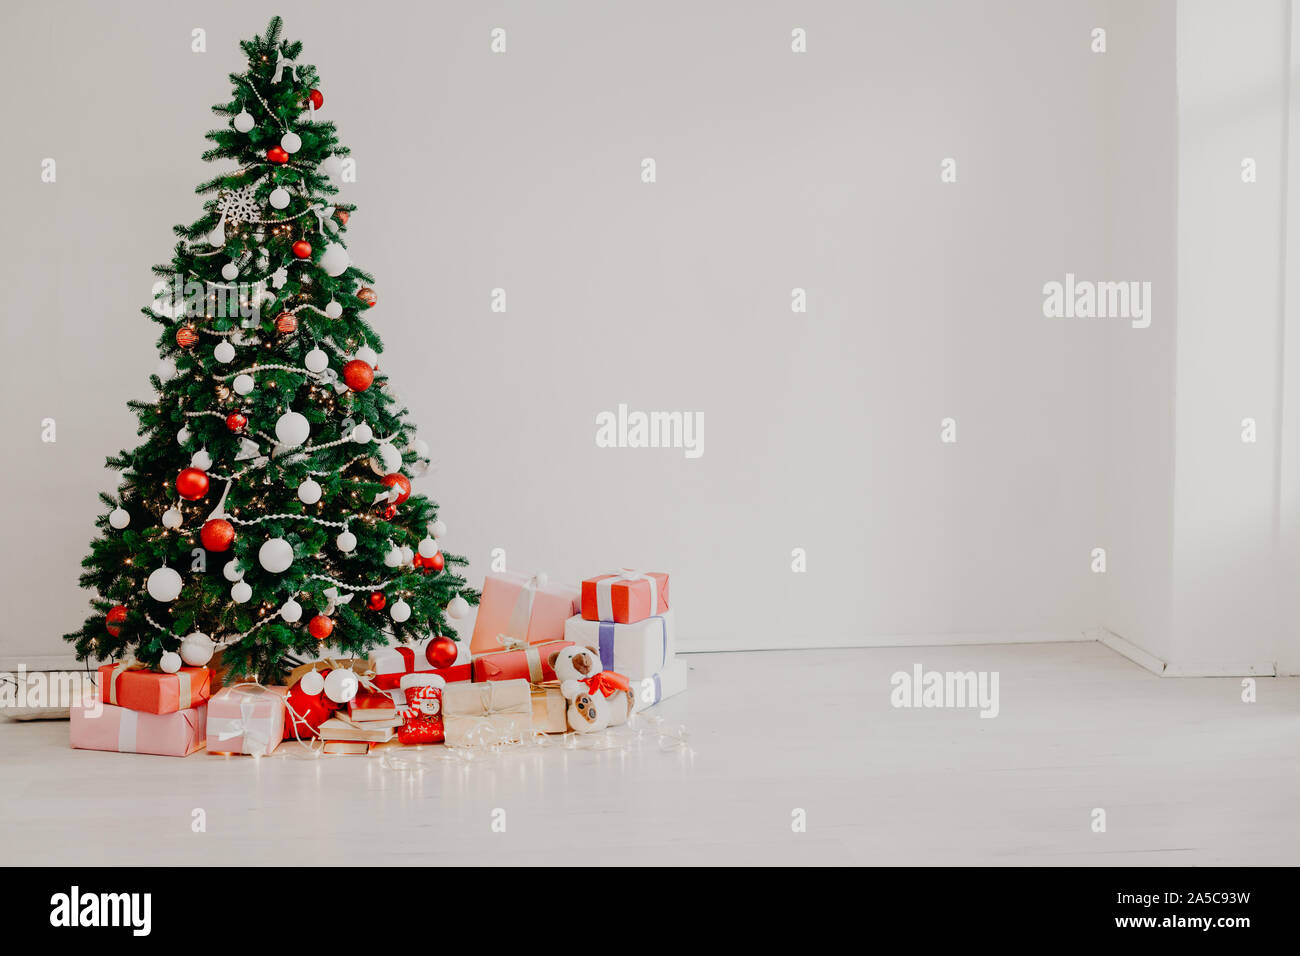 Weihnachten Deko Girlande mit Lichtern Geschenke Spielzeug Schneeflocken Stockfoto